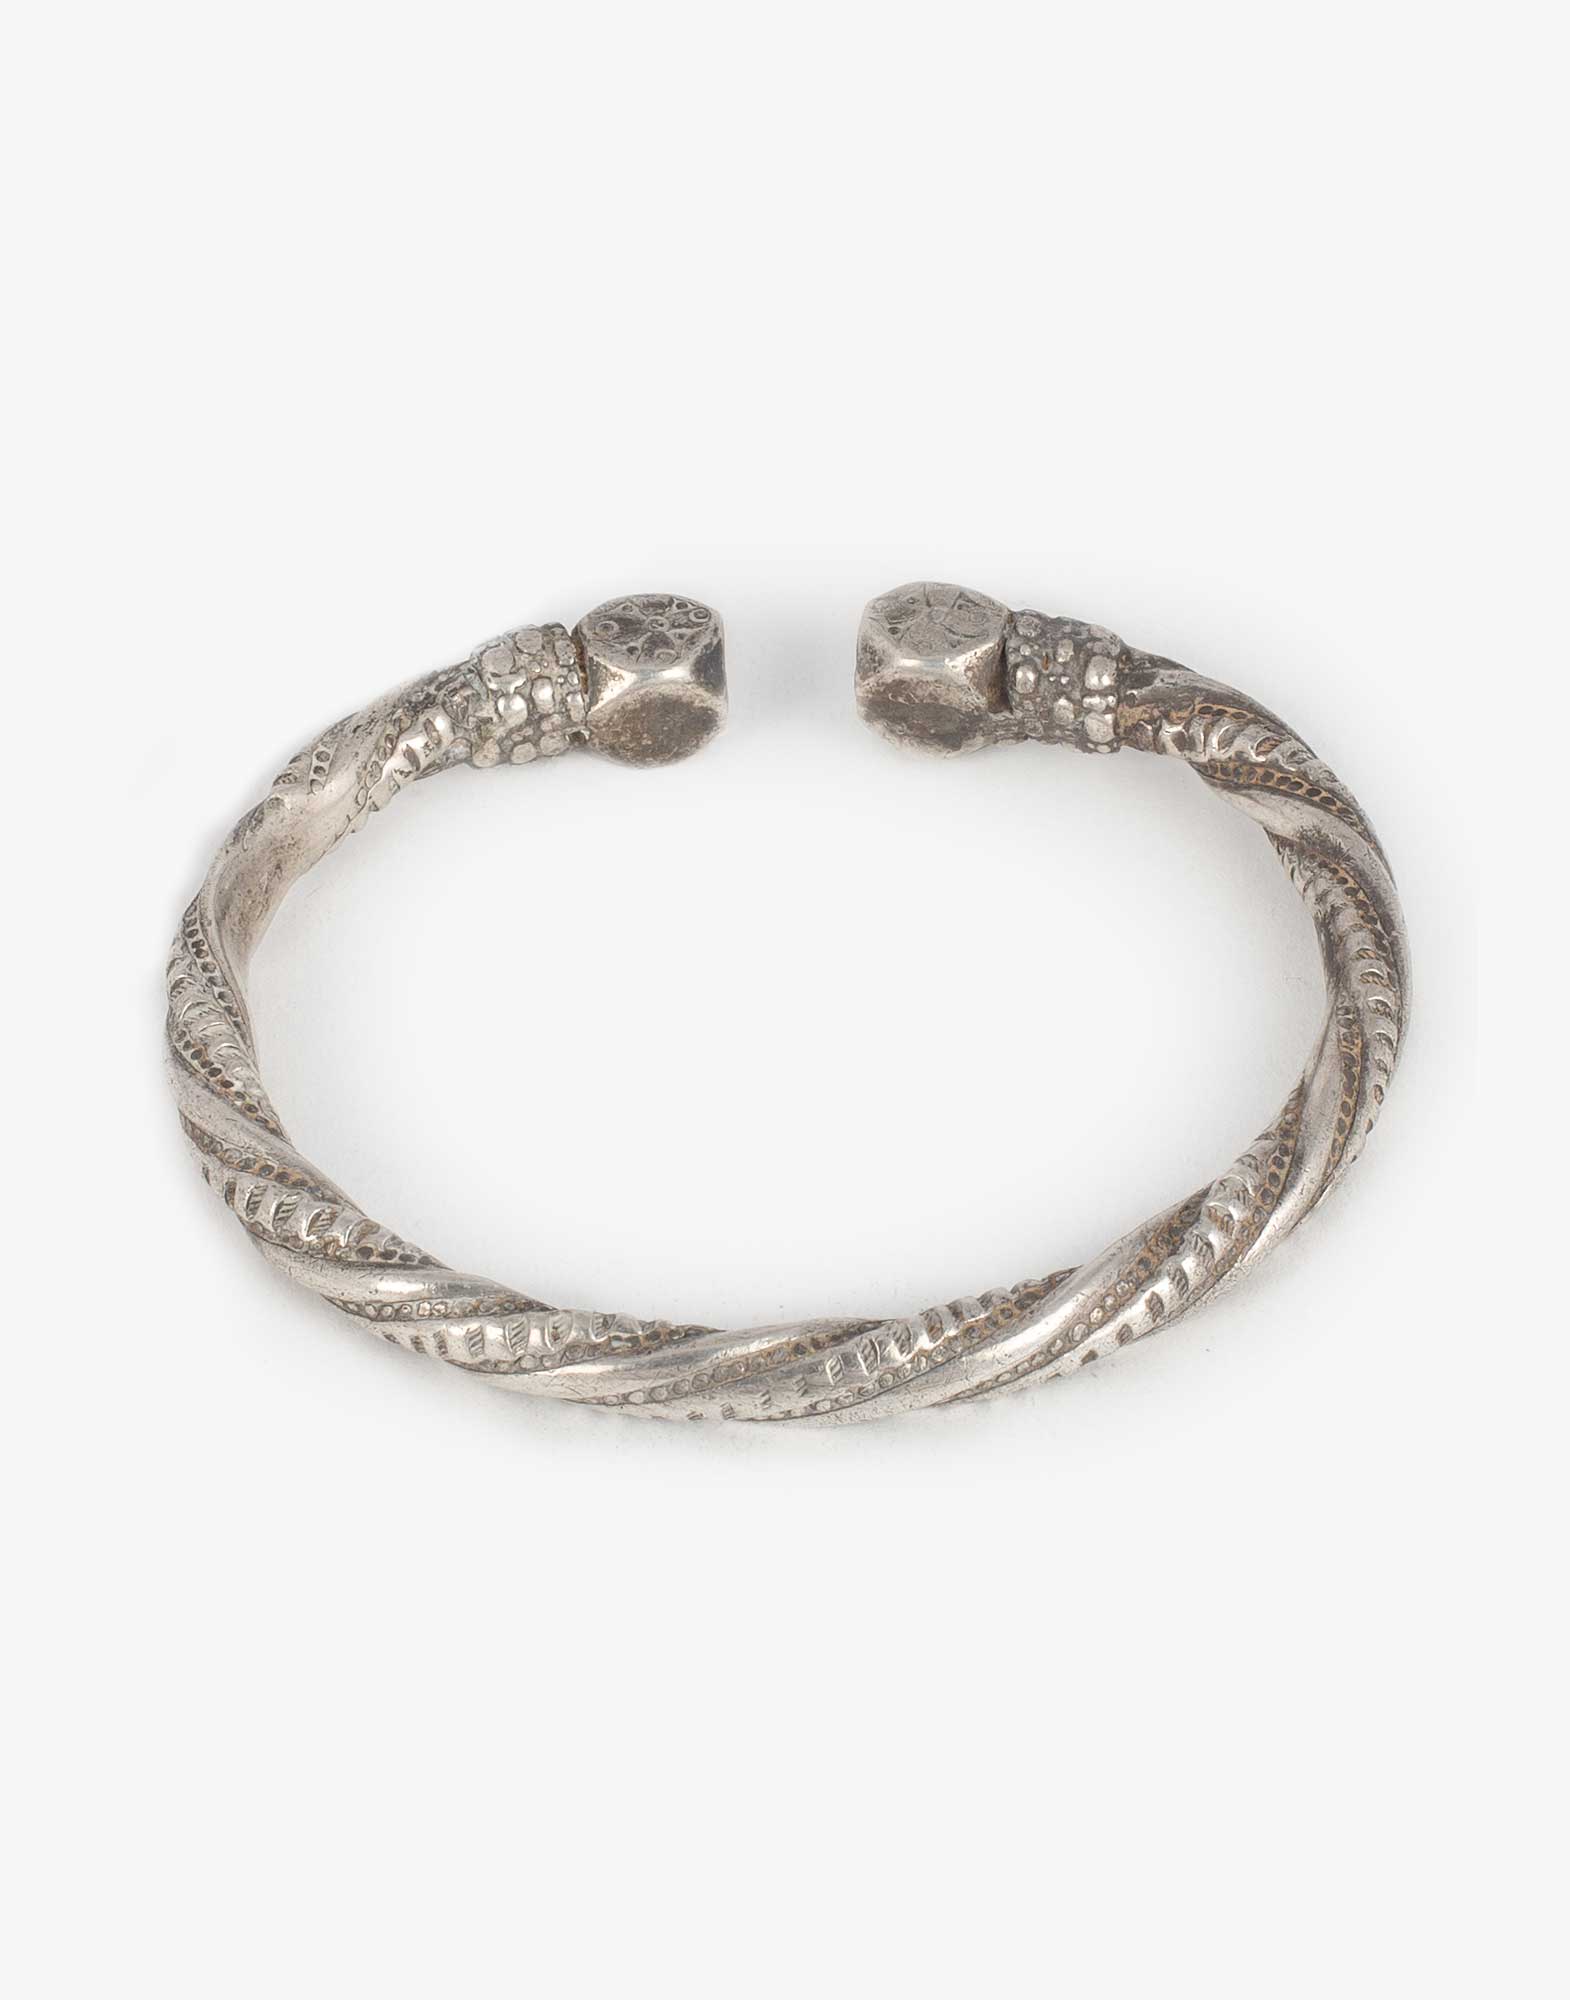 Vintage Sterling Silver Candida Bracelet by Joe Calafato - Bracelets/Bangles  - Jewellery